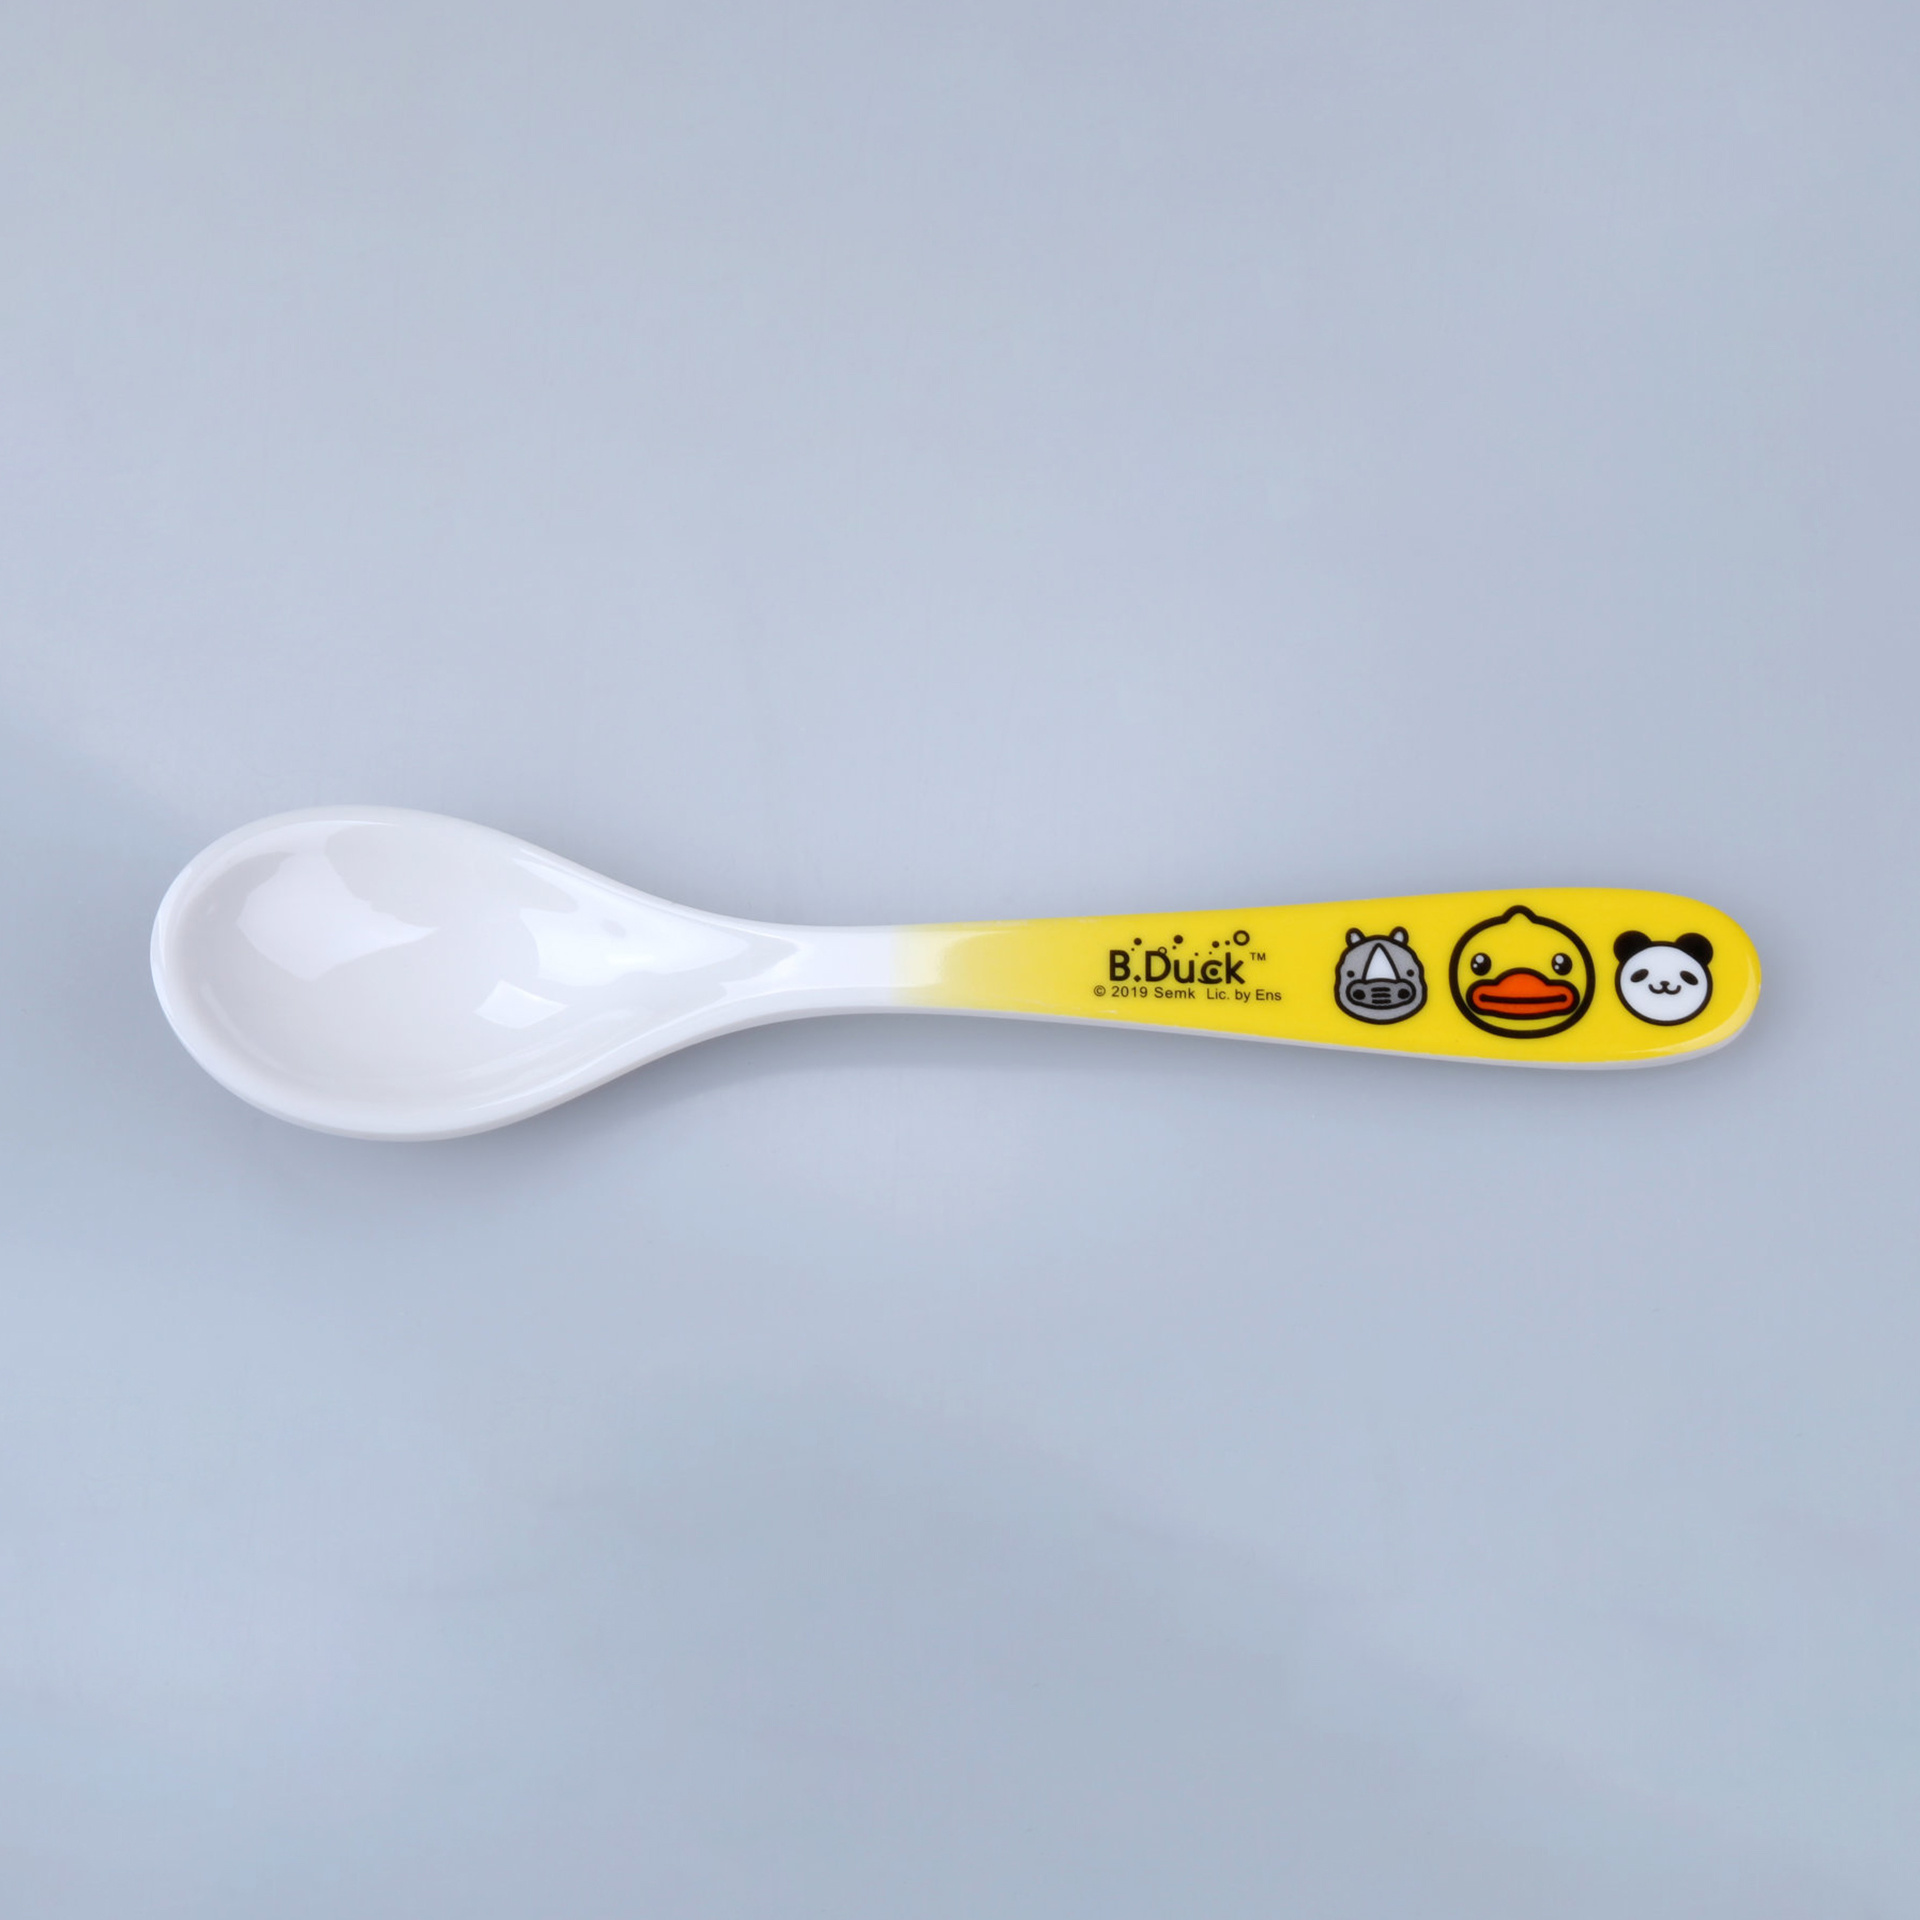 B.Duck little yellow duck spoon